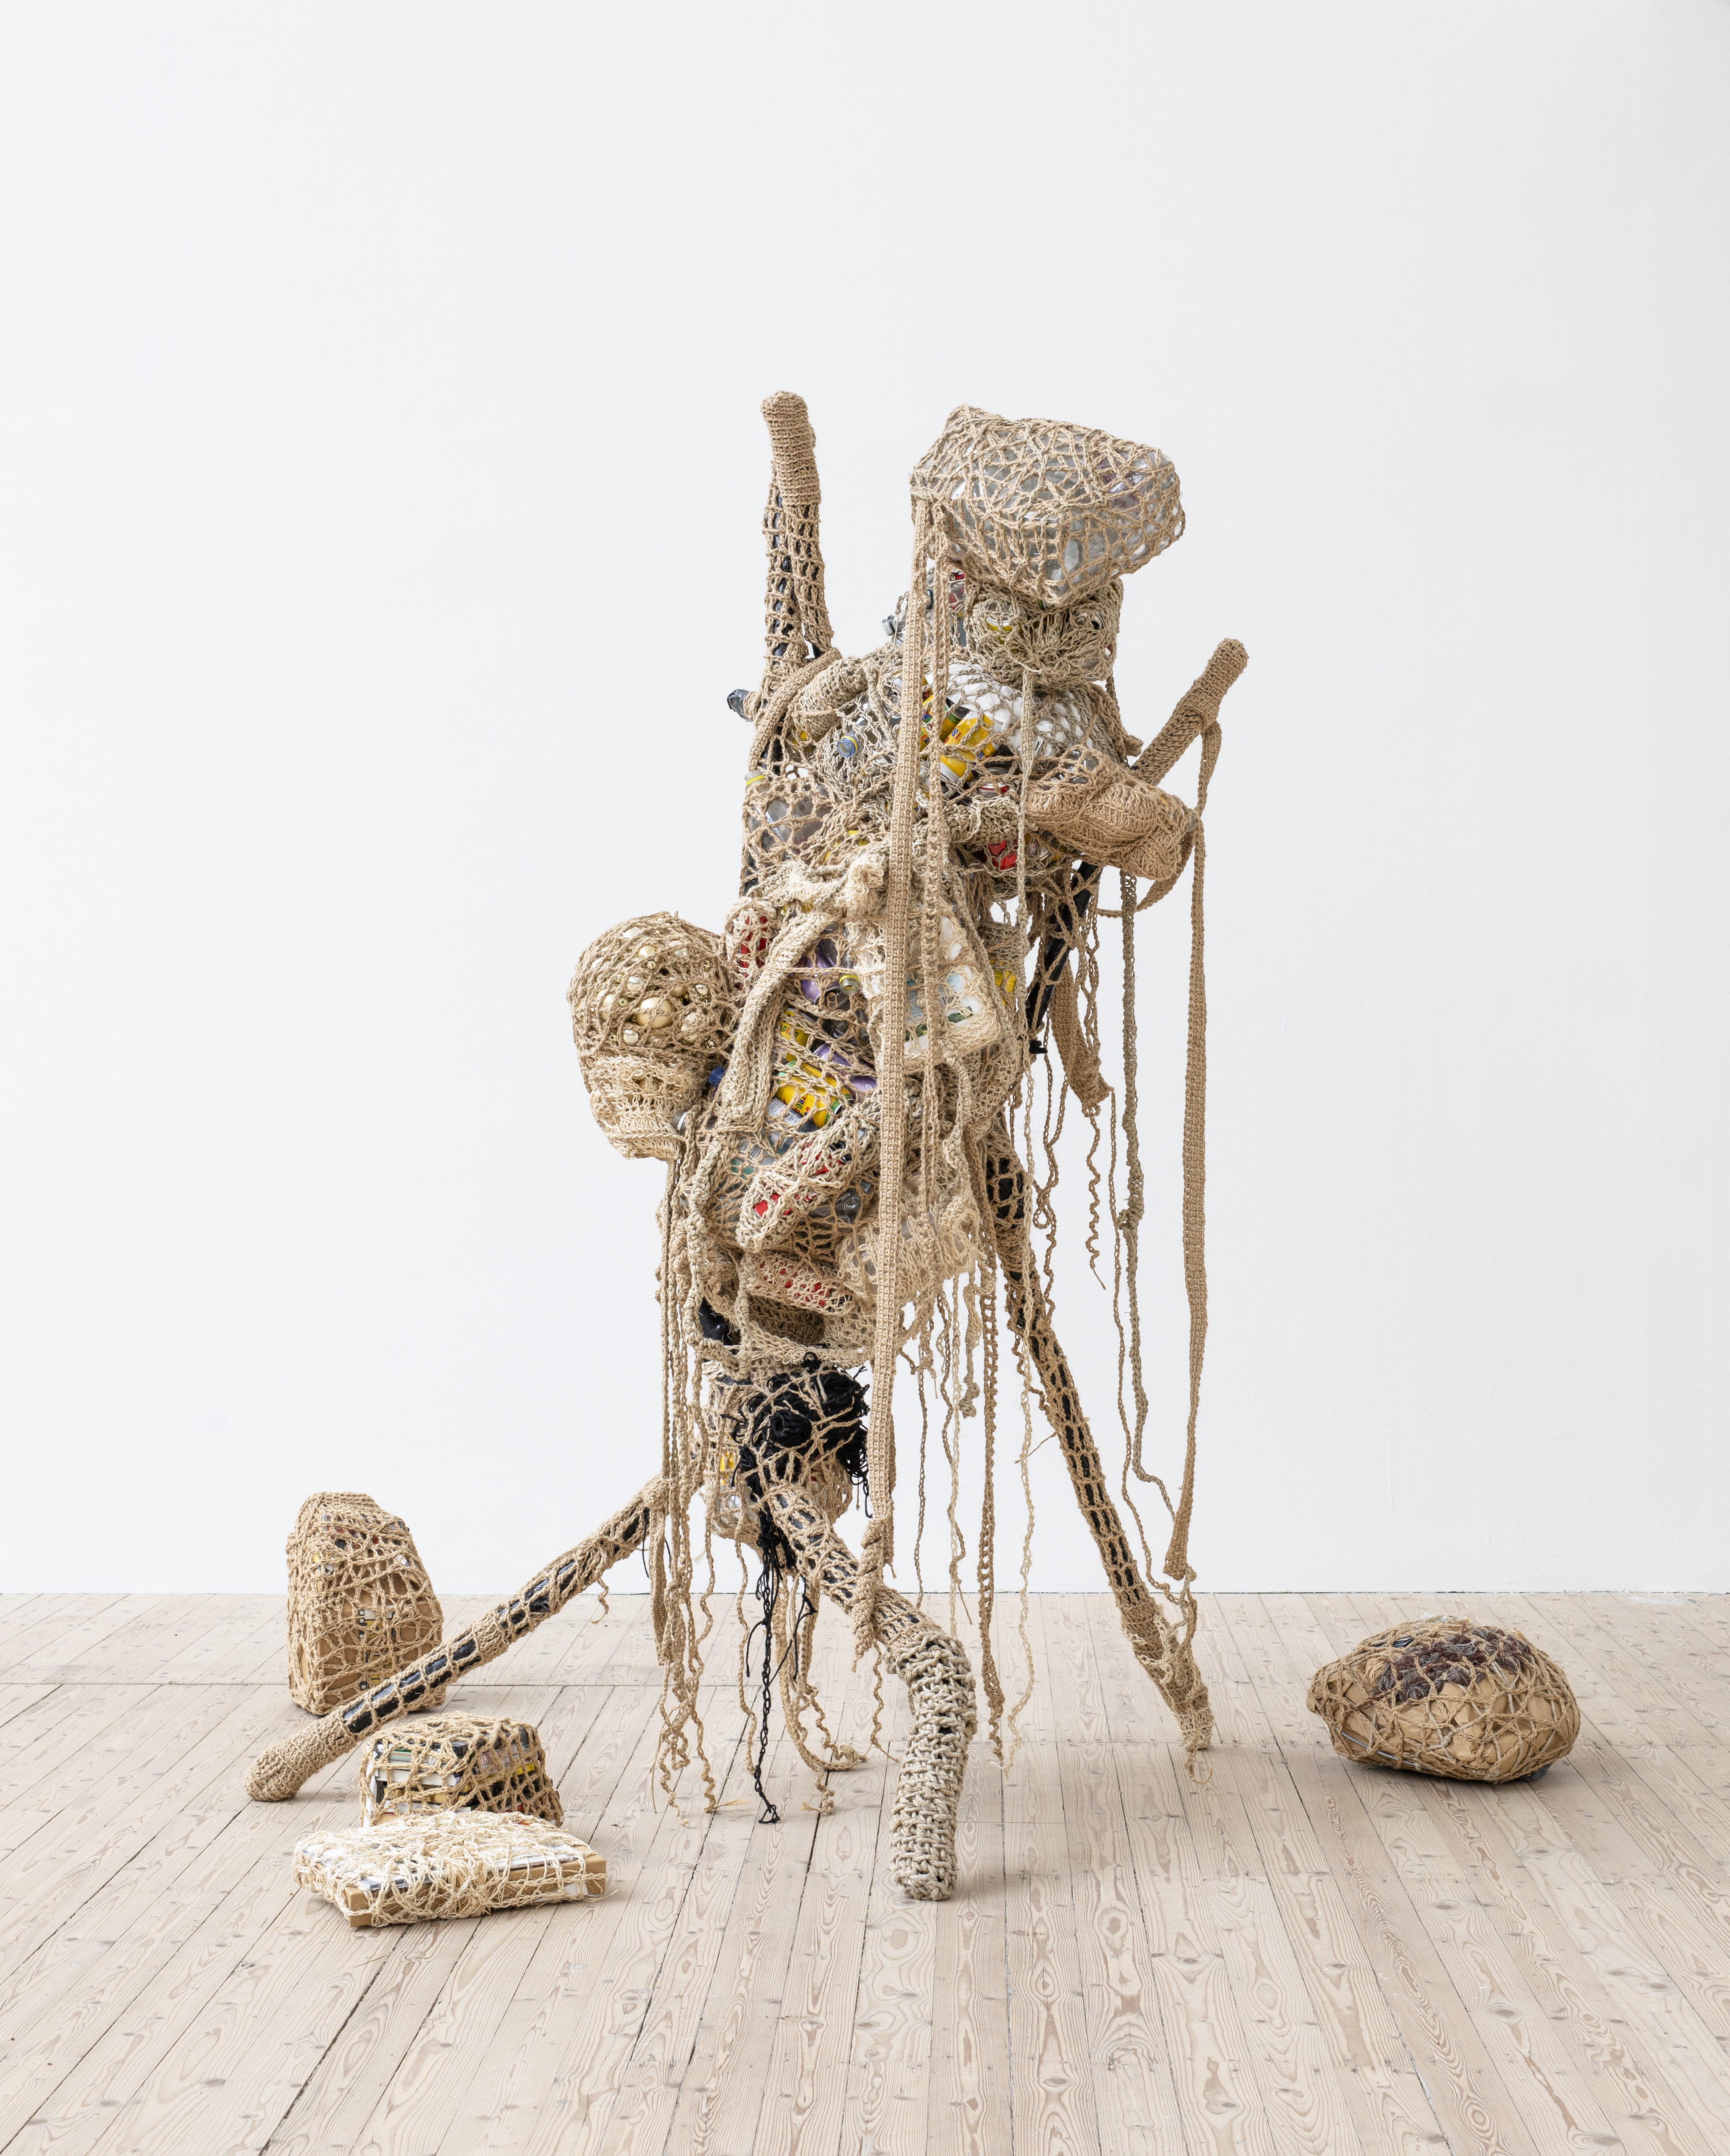 En skulptur byggd av pinnar, formade till en människogestalt invirkad i tråd.